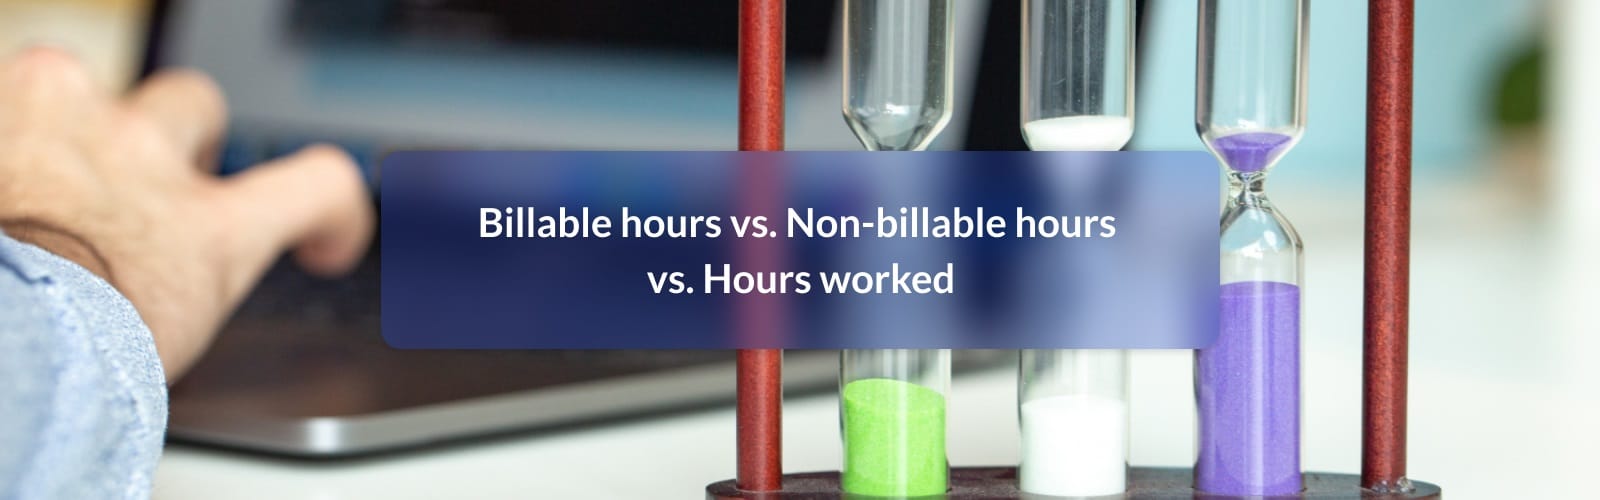 Billable hours vs. Non-billable hours vs. Hours worked